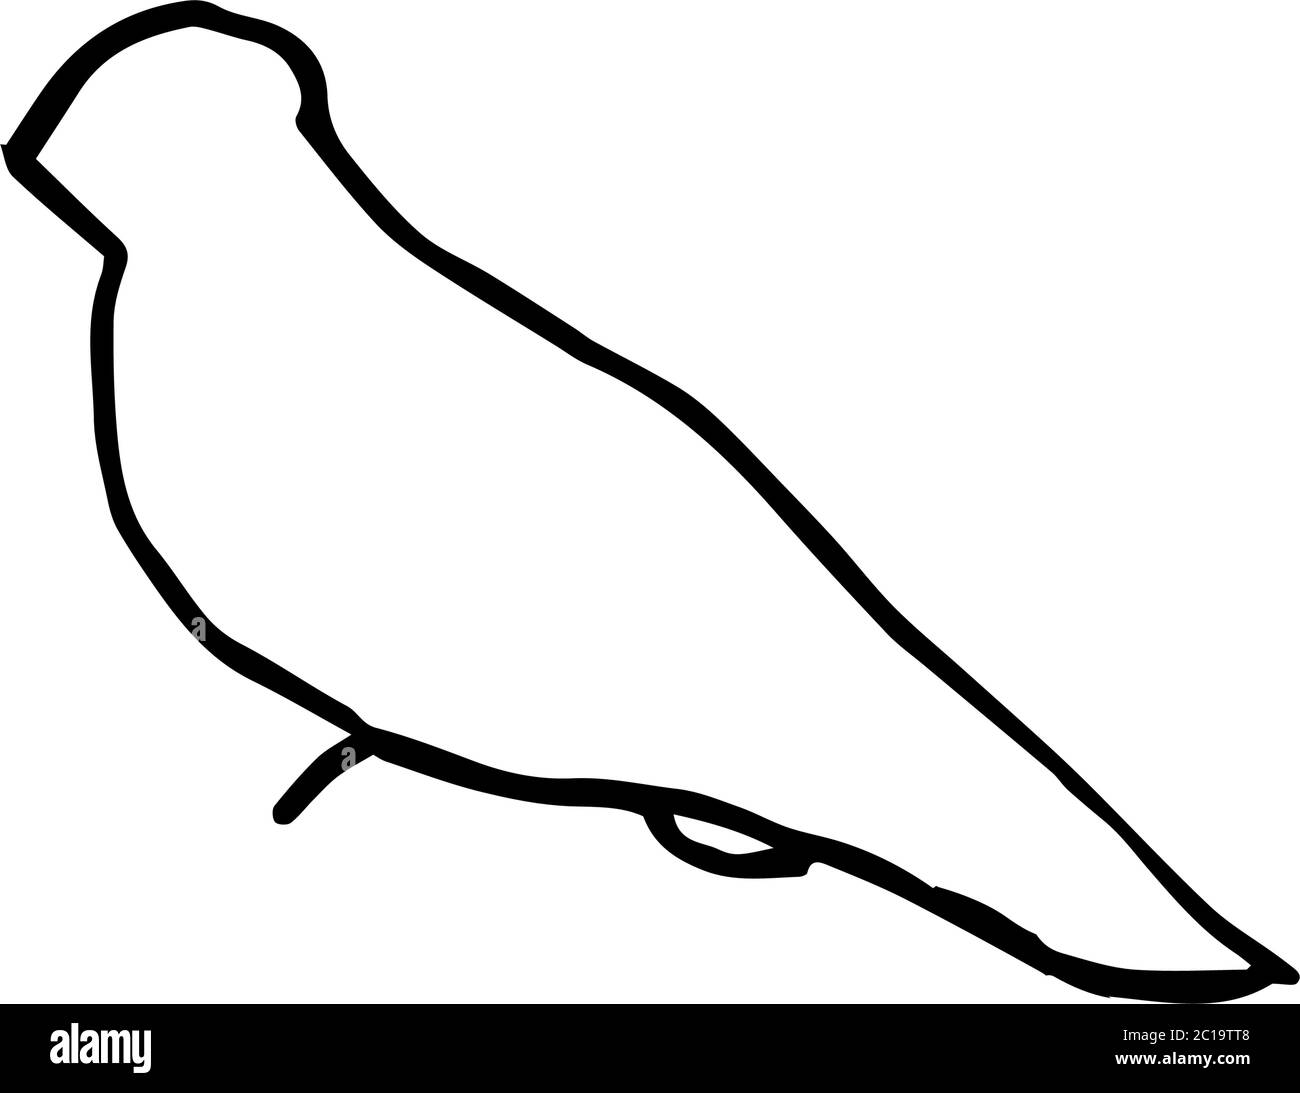 Isolato su sfondo bianco uccelli Stock illustrazione, vettore, disegno a mano, elemento di disegno per la stampa, scrapbooking, cartolina Illustrazione Vettoriale